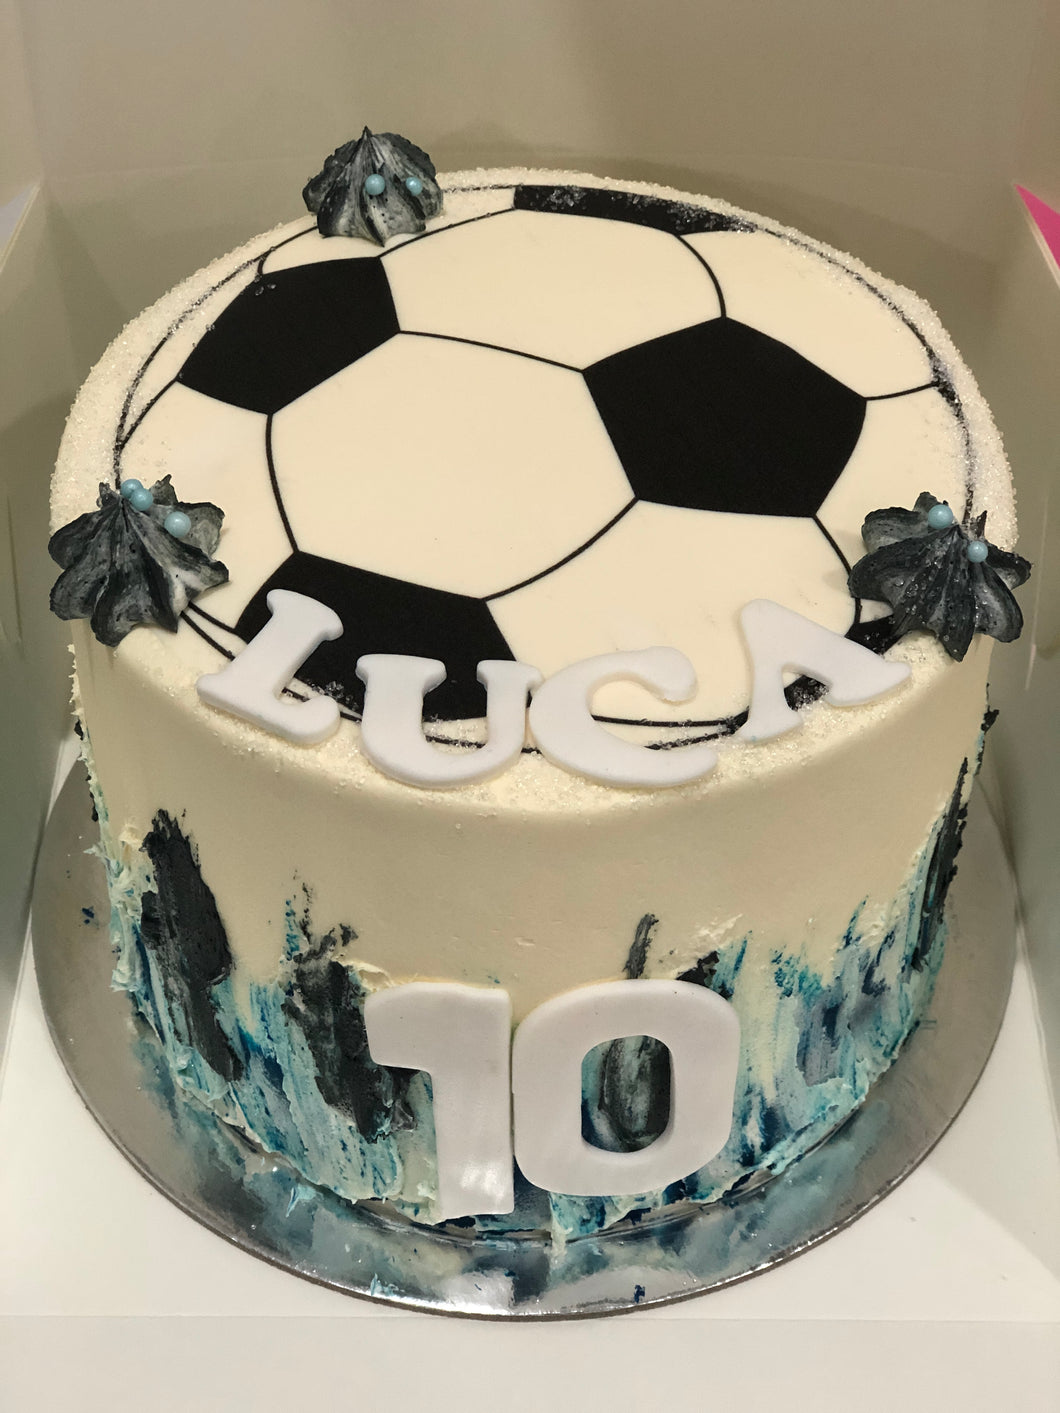 6” soccer cake